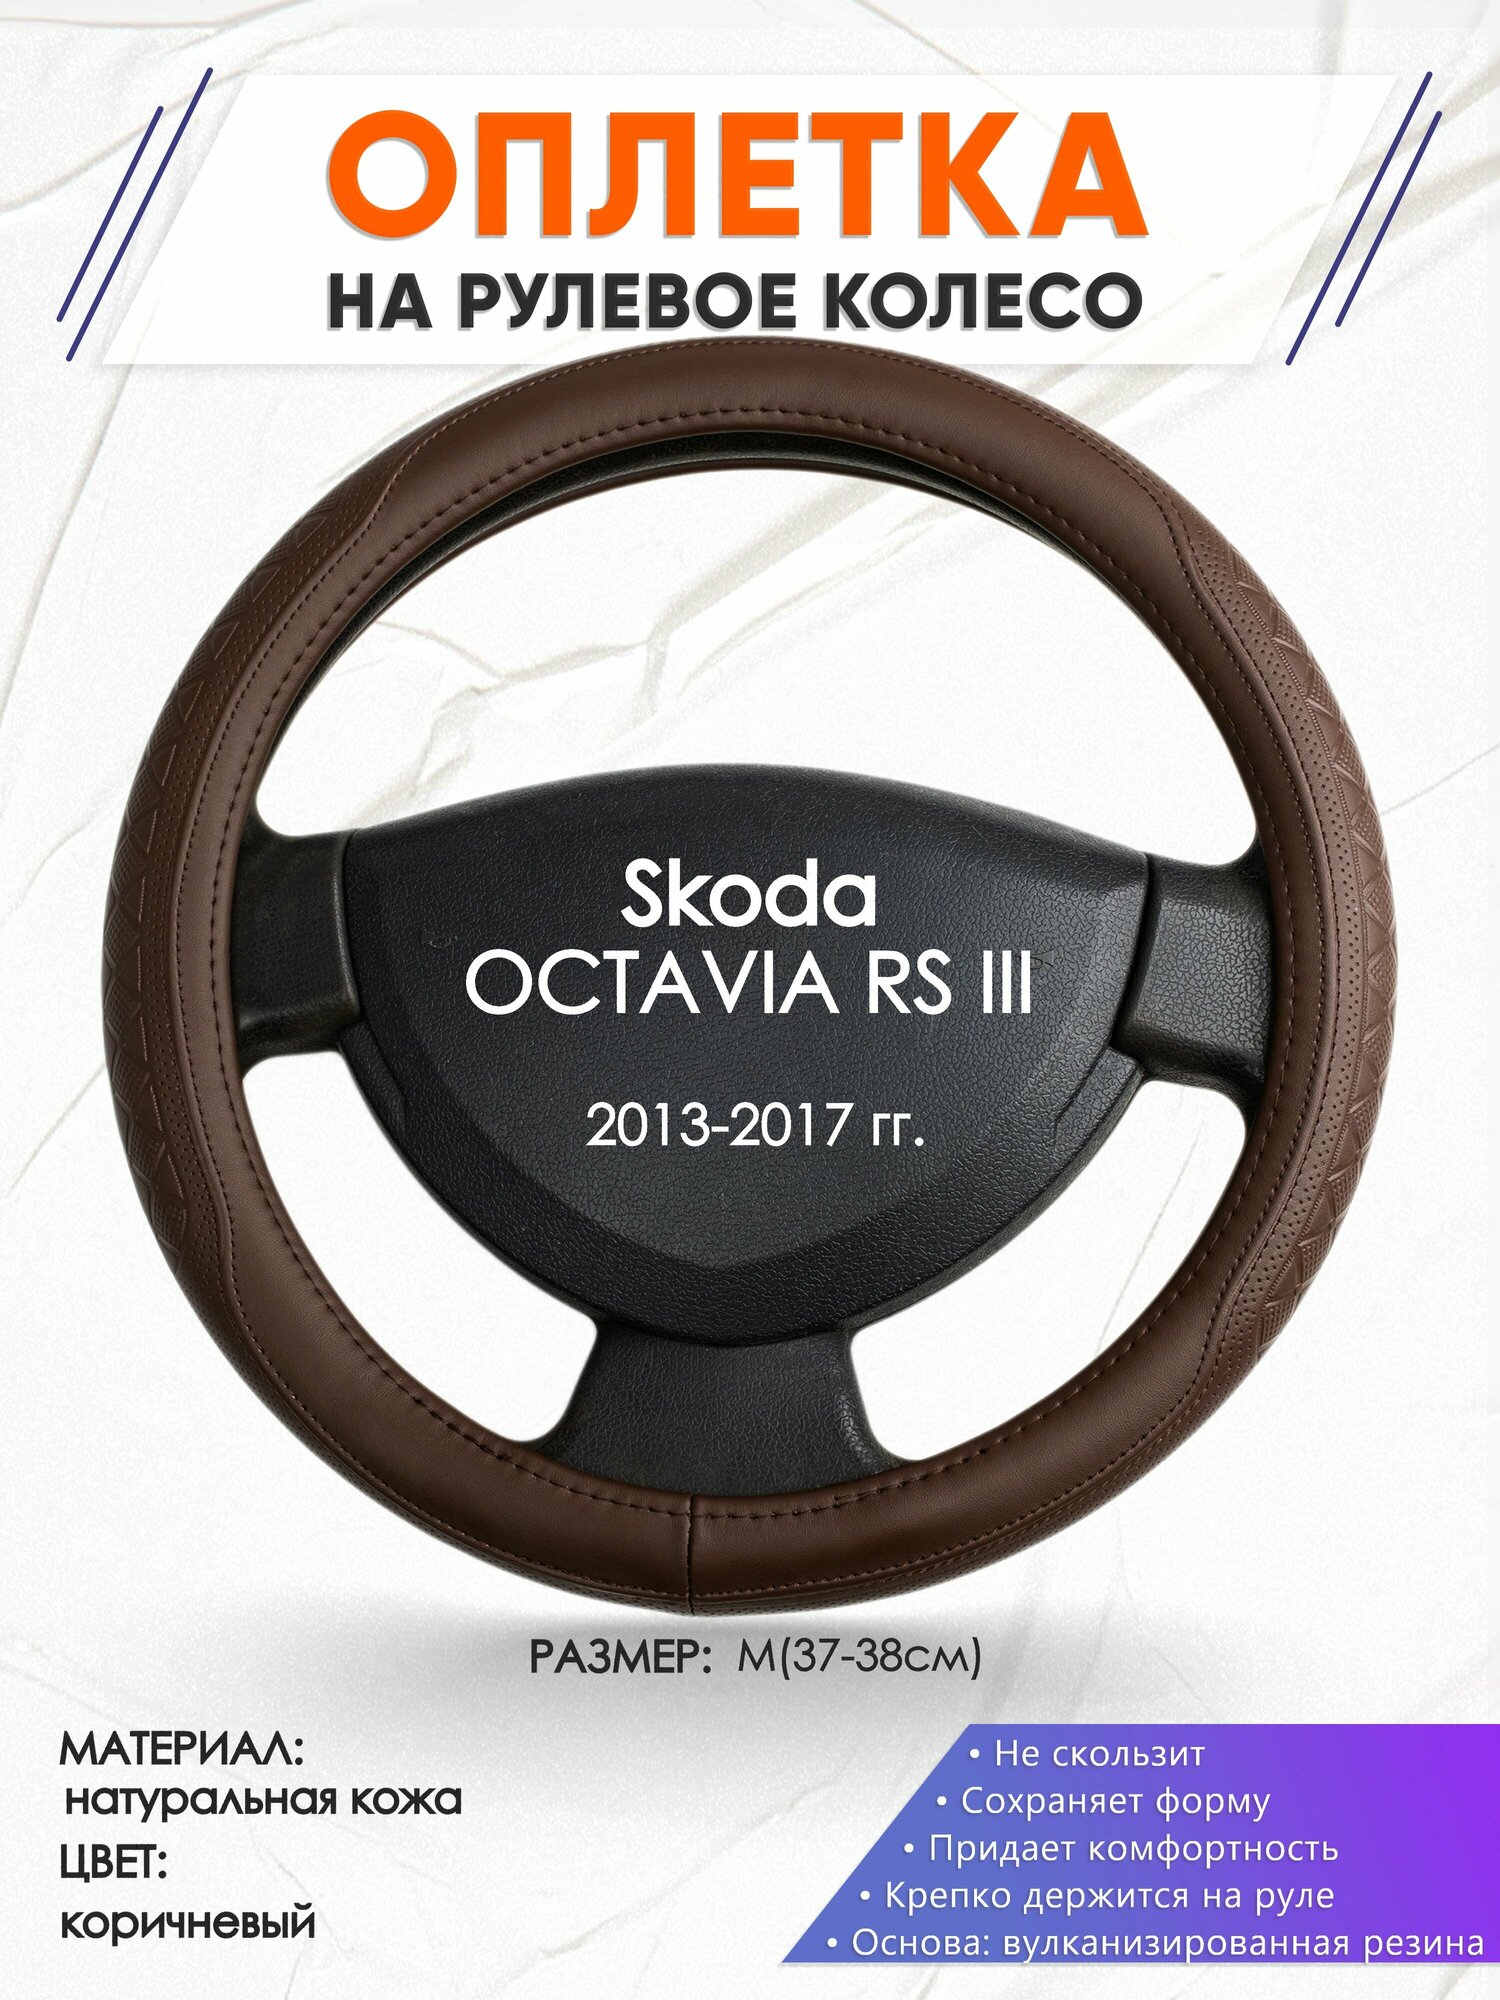 Оплетка наруль для Skoda OCTAVIA RS III(Шкода Октавия) 2013-2017 годов выпуска, размер M(37-38см), Натуральная кожа 88